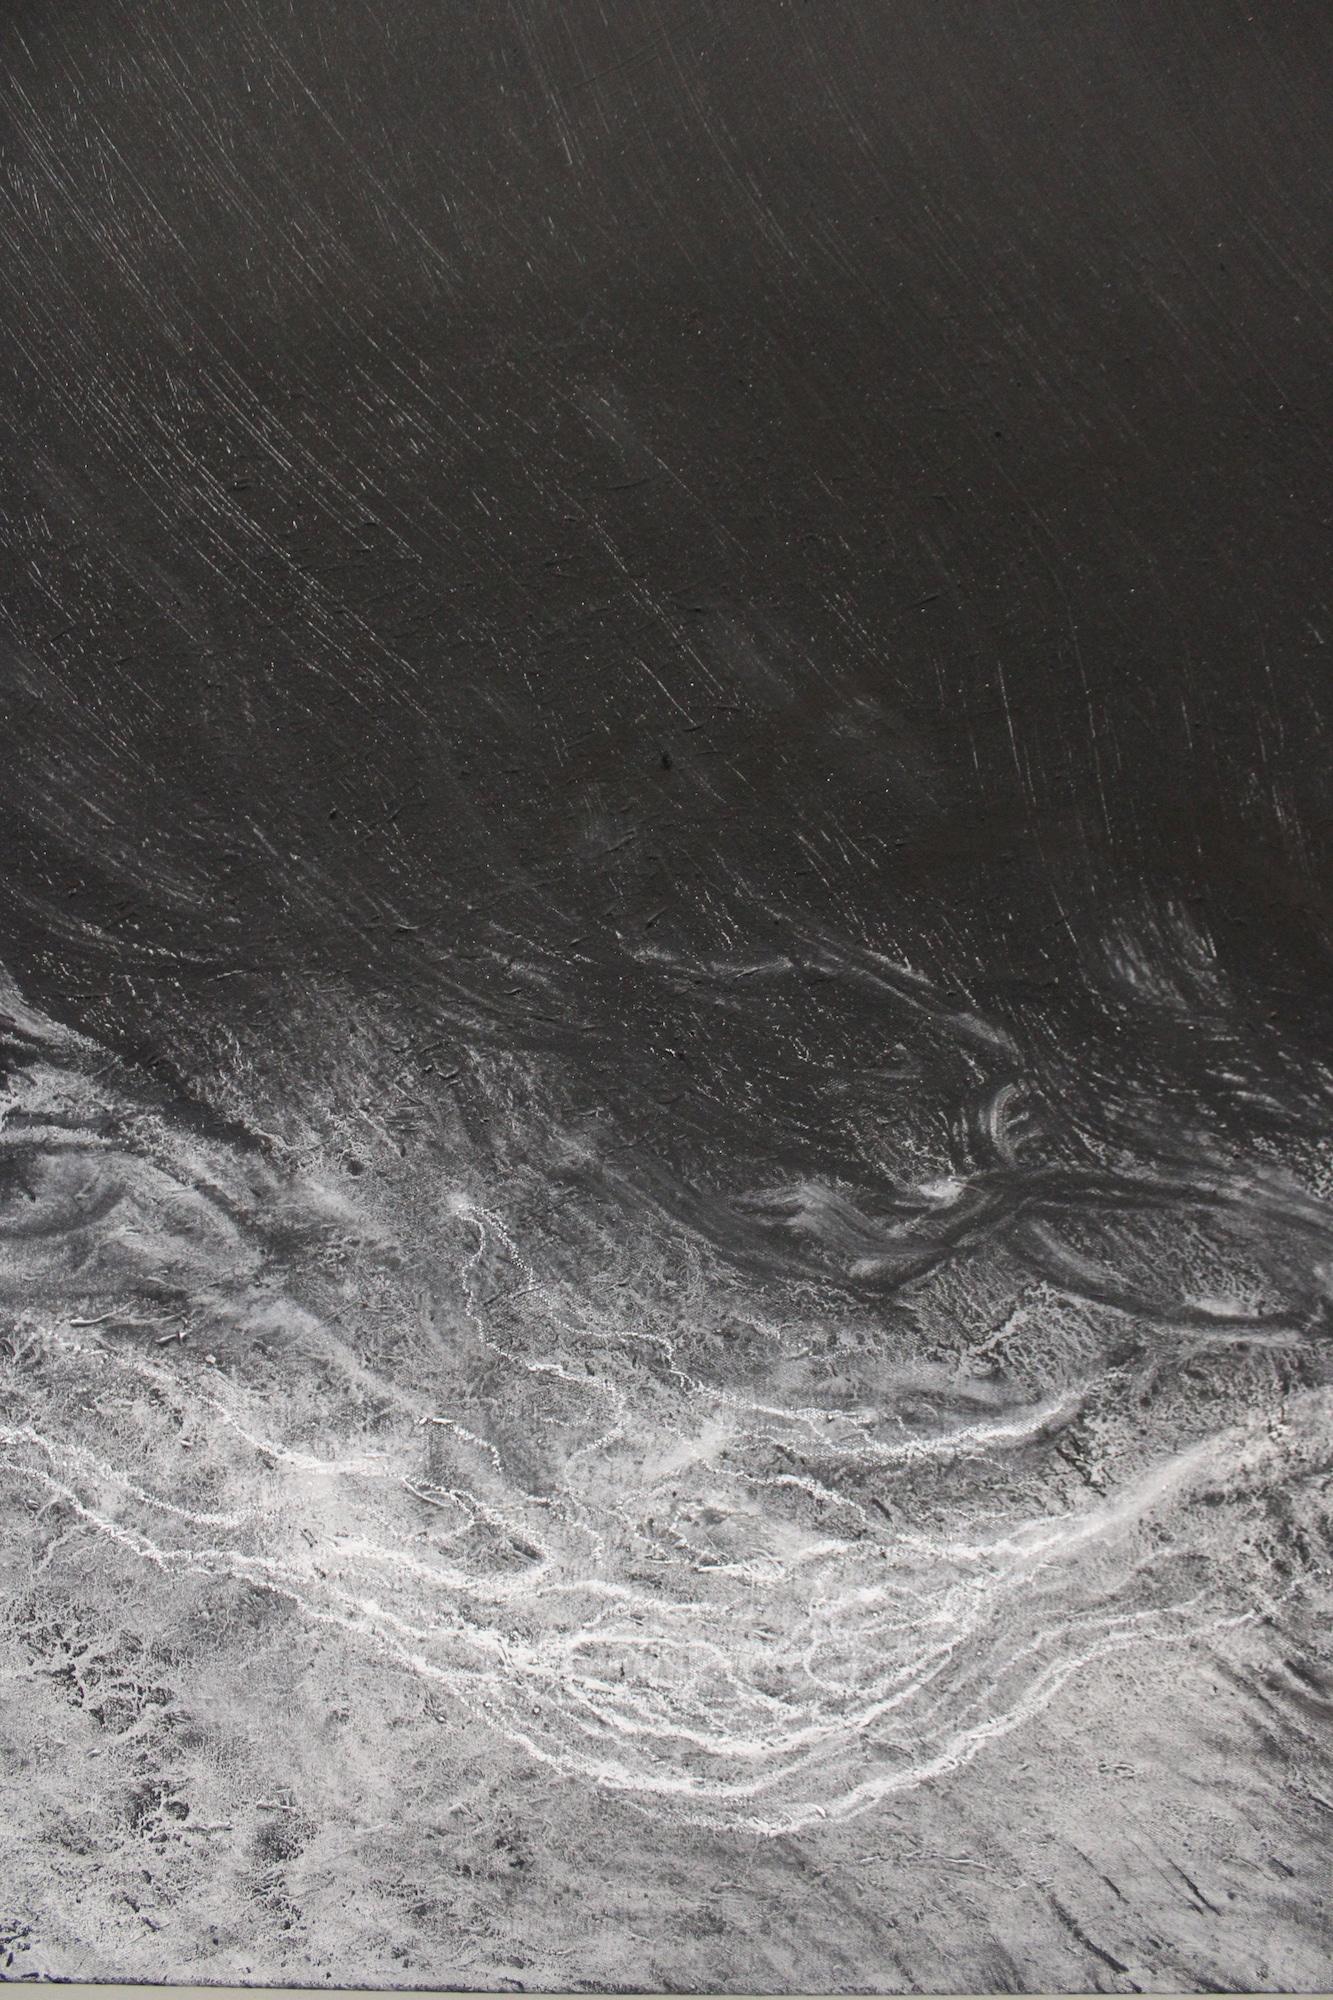 The void by Franco Salas Borquez - Black & white painting, ocean waves, seascape 5